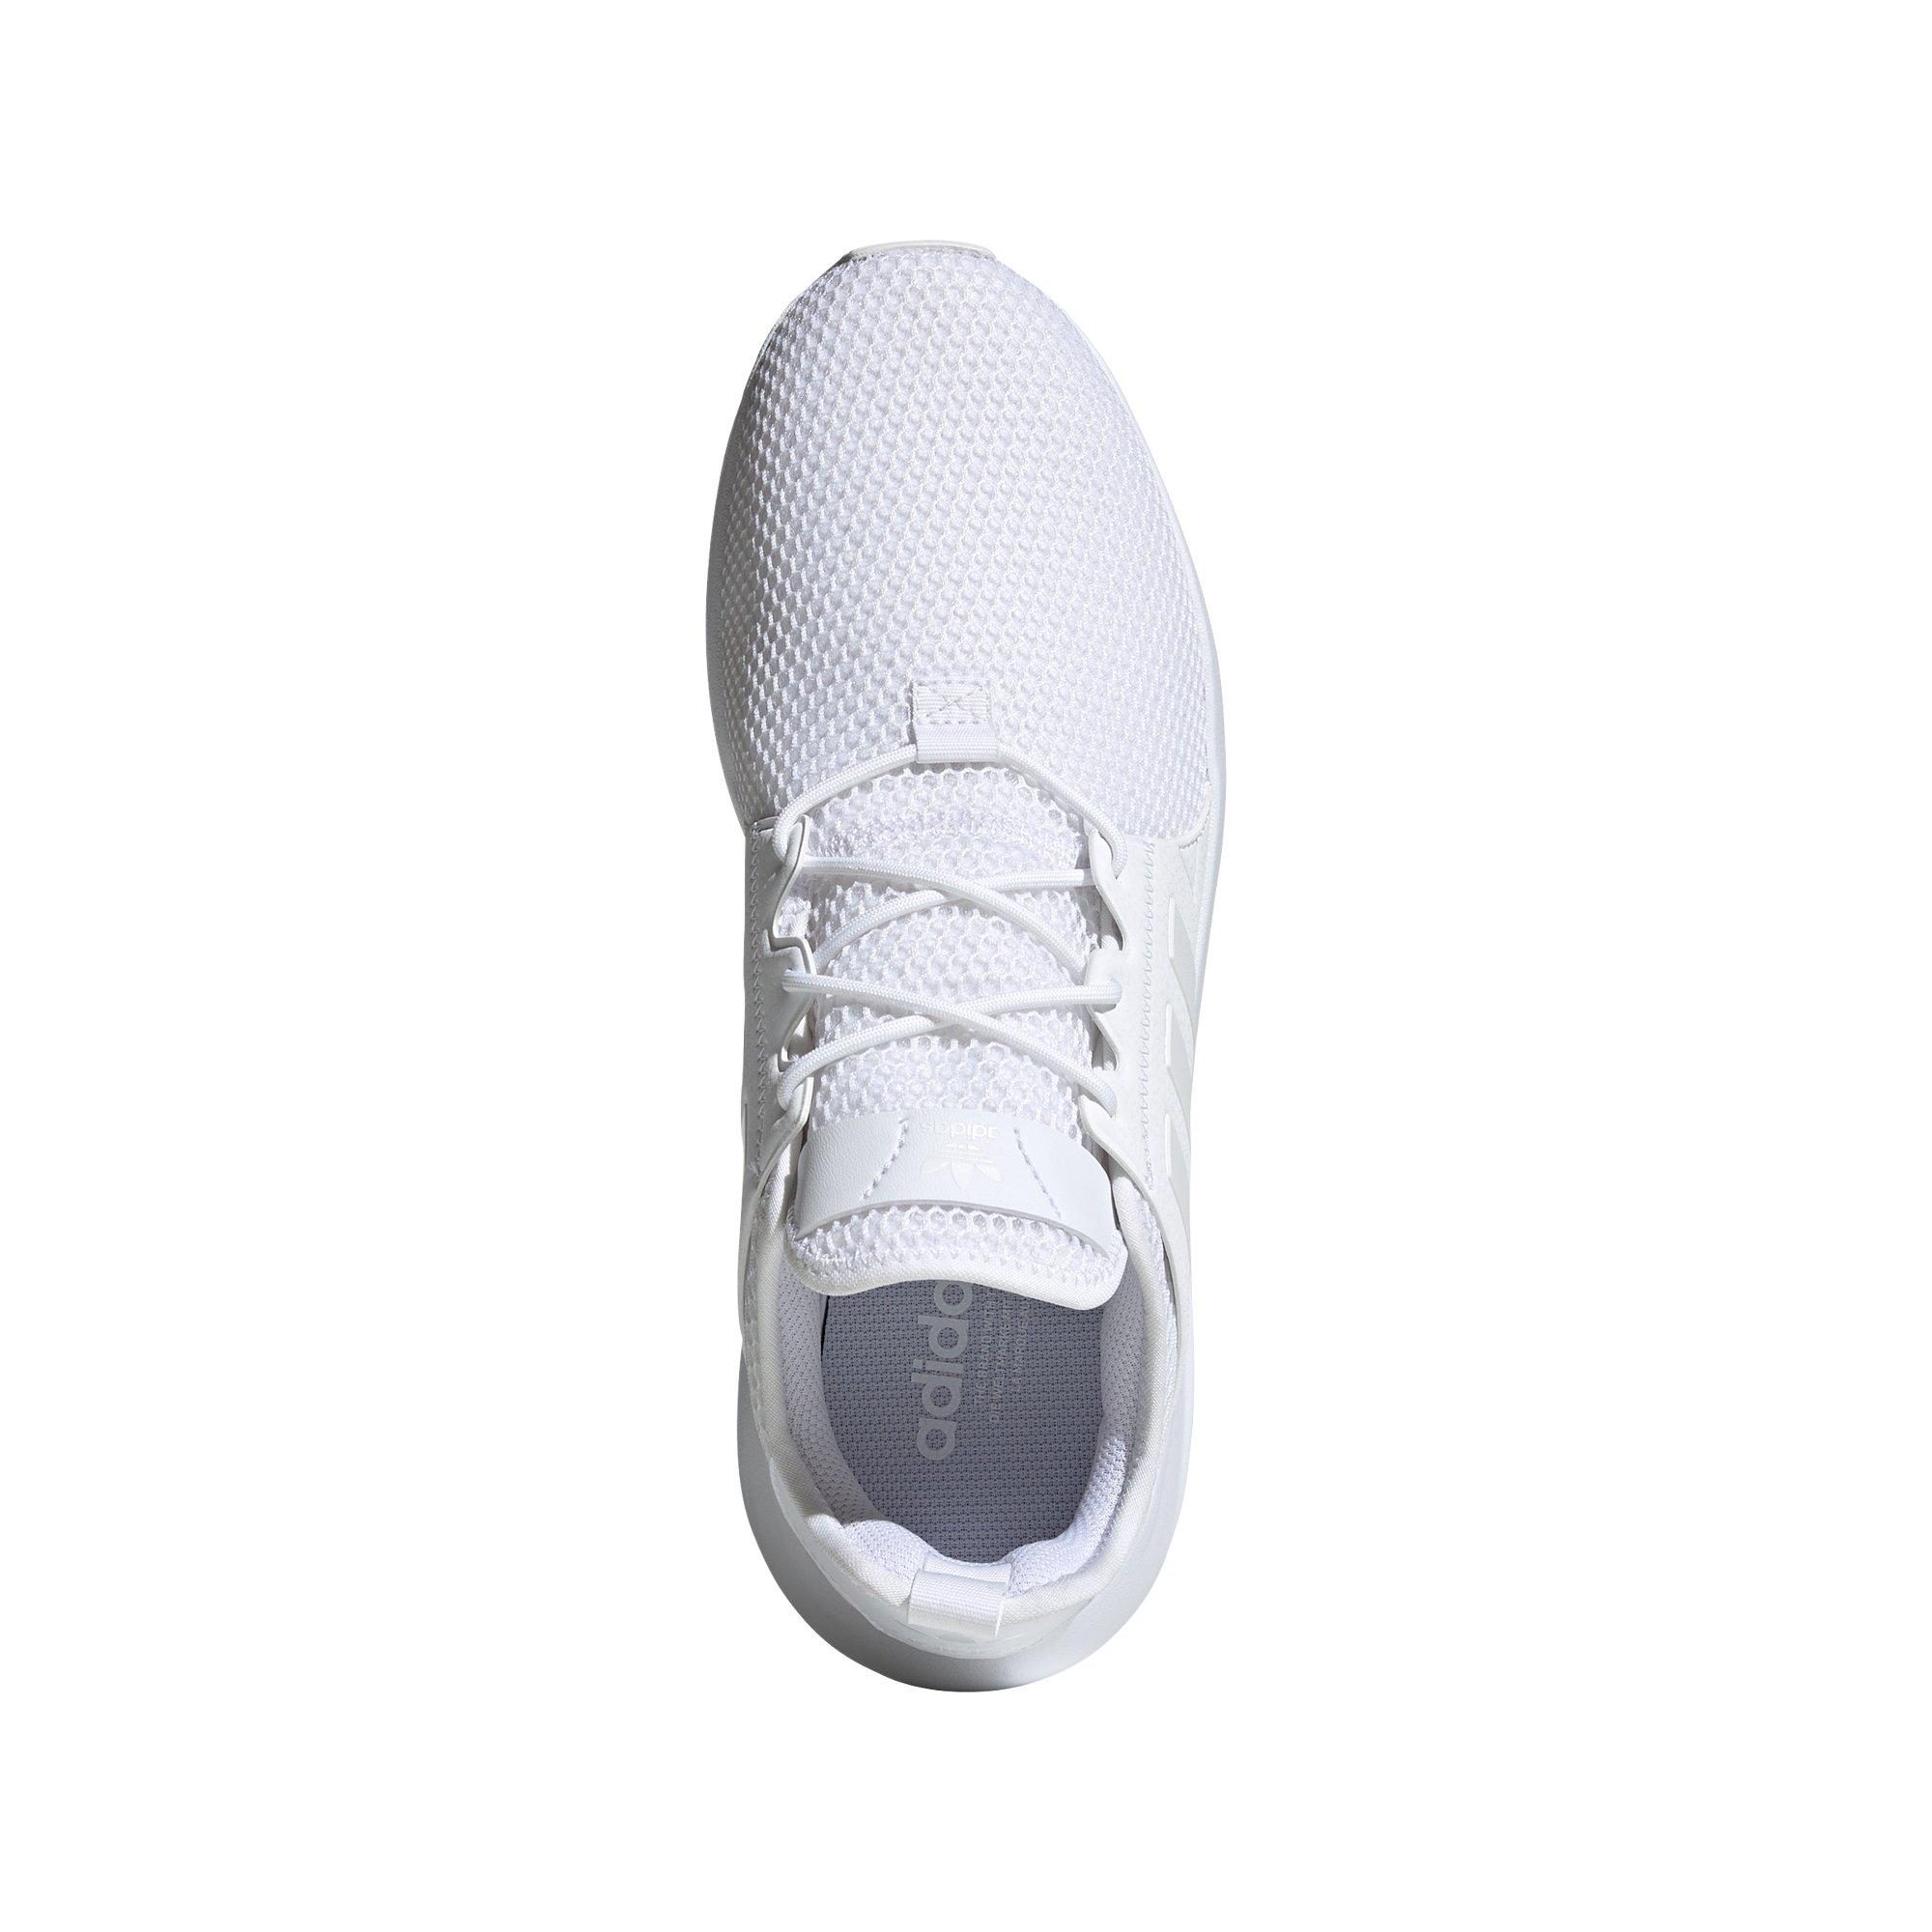 X_PLR "Ftwr White" Men's Shoe